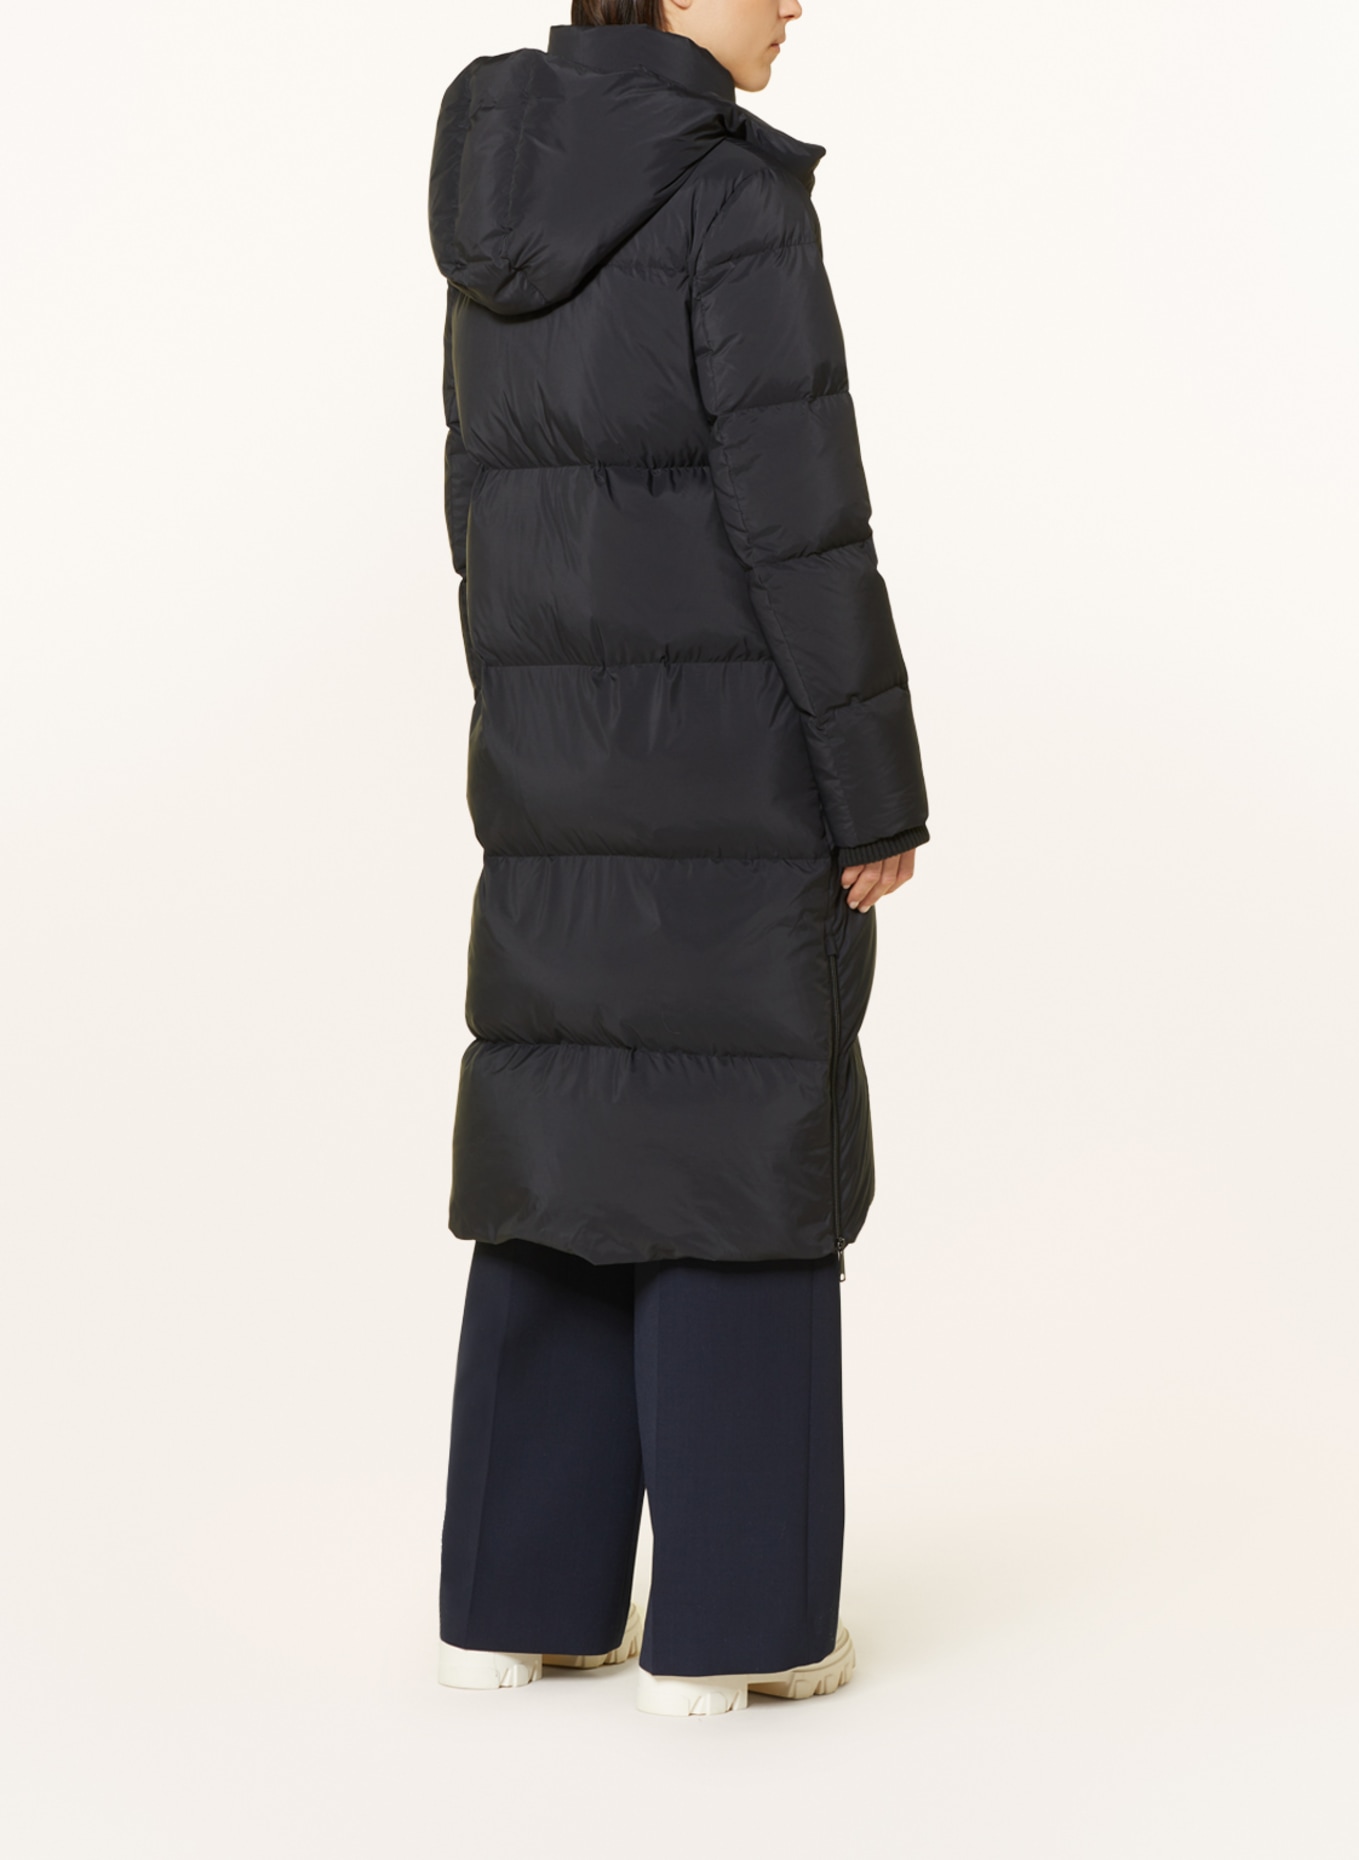 s.Oliver BLACK LABEL Down jacket with removable hood, Color: BLACK (Image 3)